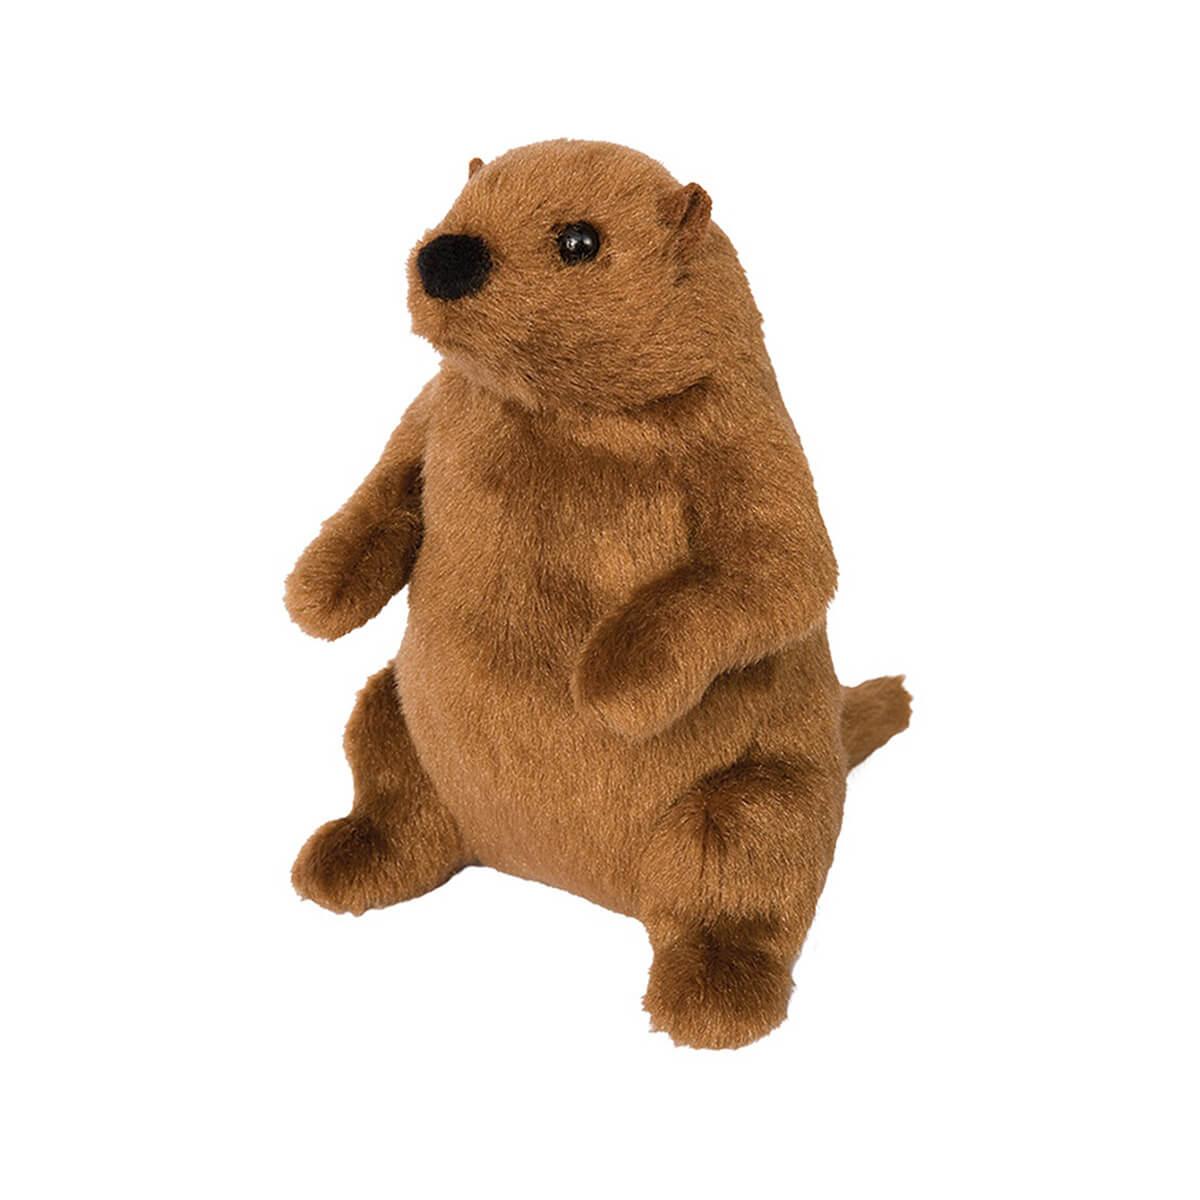  Mr.G Groundhog Plush Toy